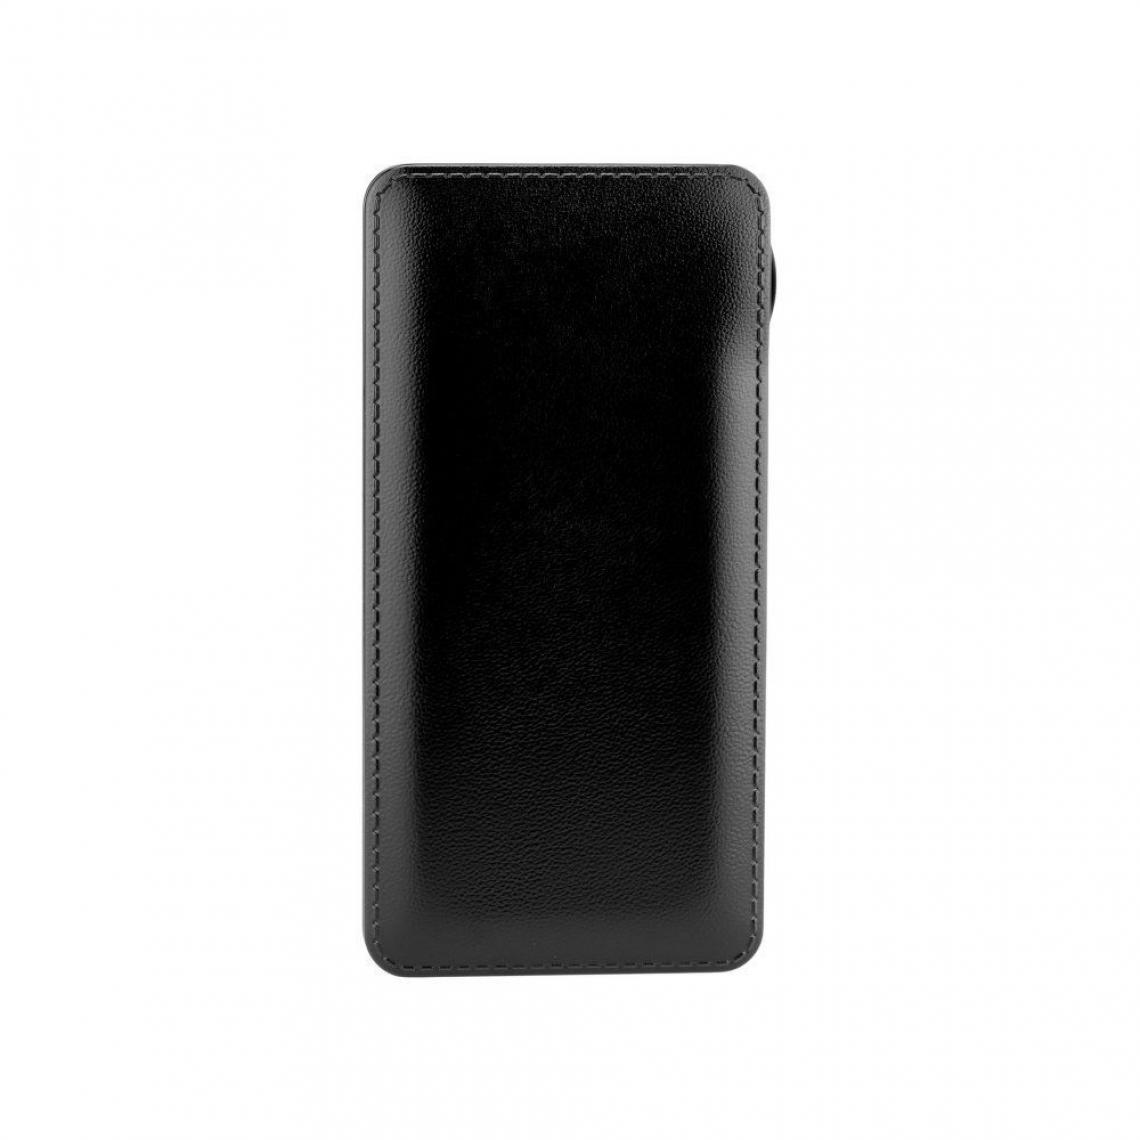 Ozzzo - Chargeur batterie externe 20000 mAh powerbank ozzzo noir pour LG V10 - Autres accessoires smartphone